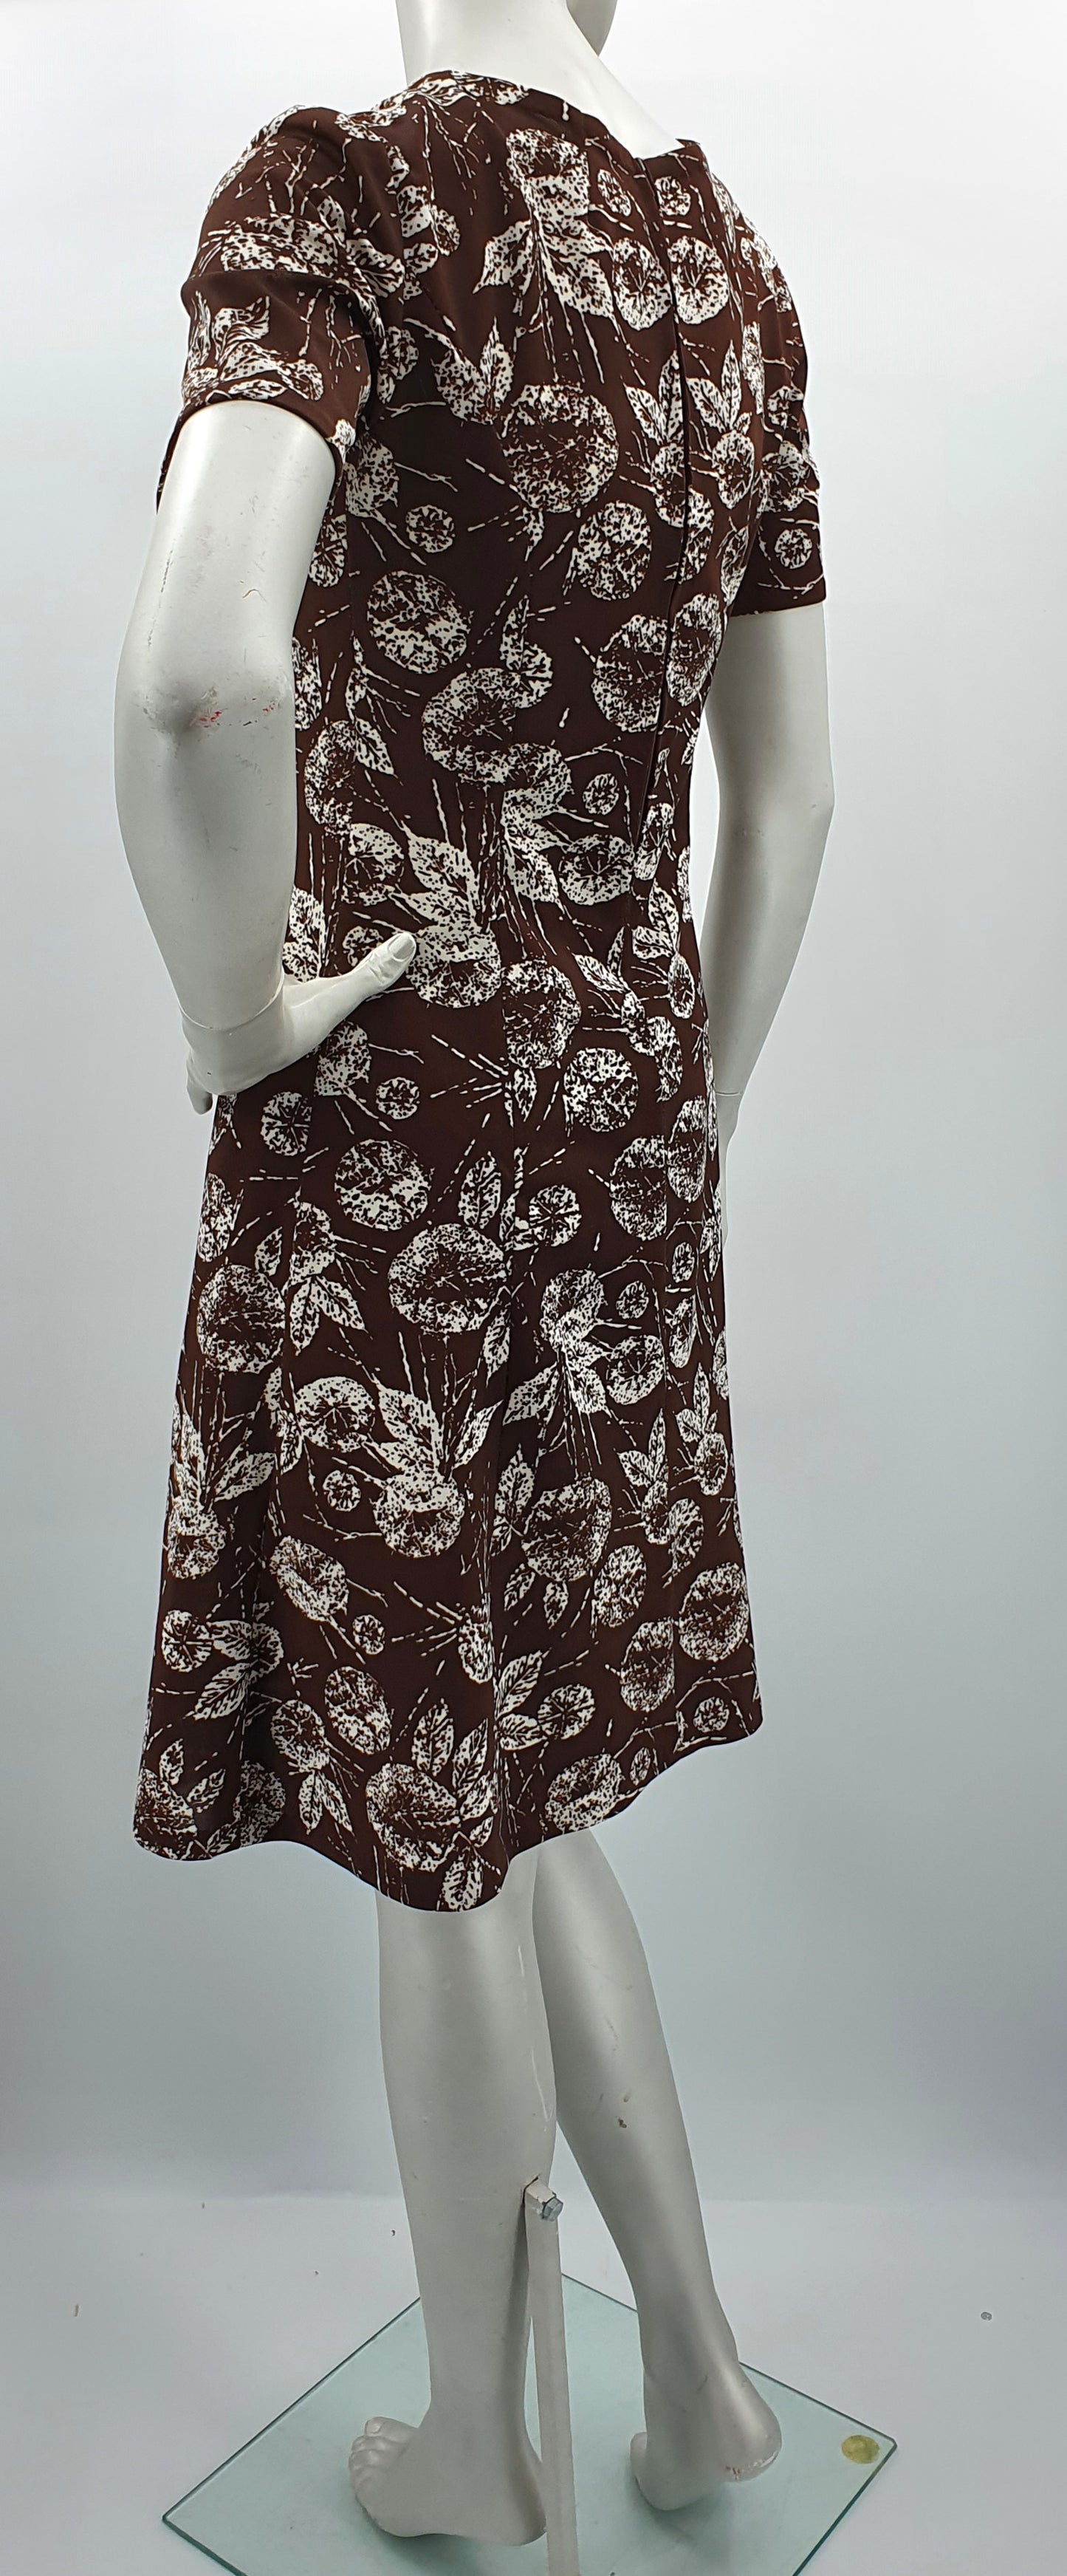 Tummanruskea lehtikuvioinen mekko, 90-luku, koko 34-36